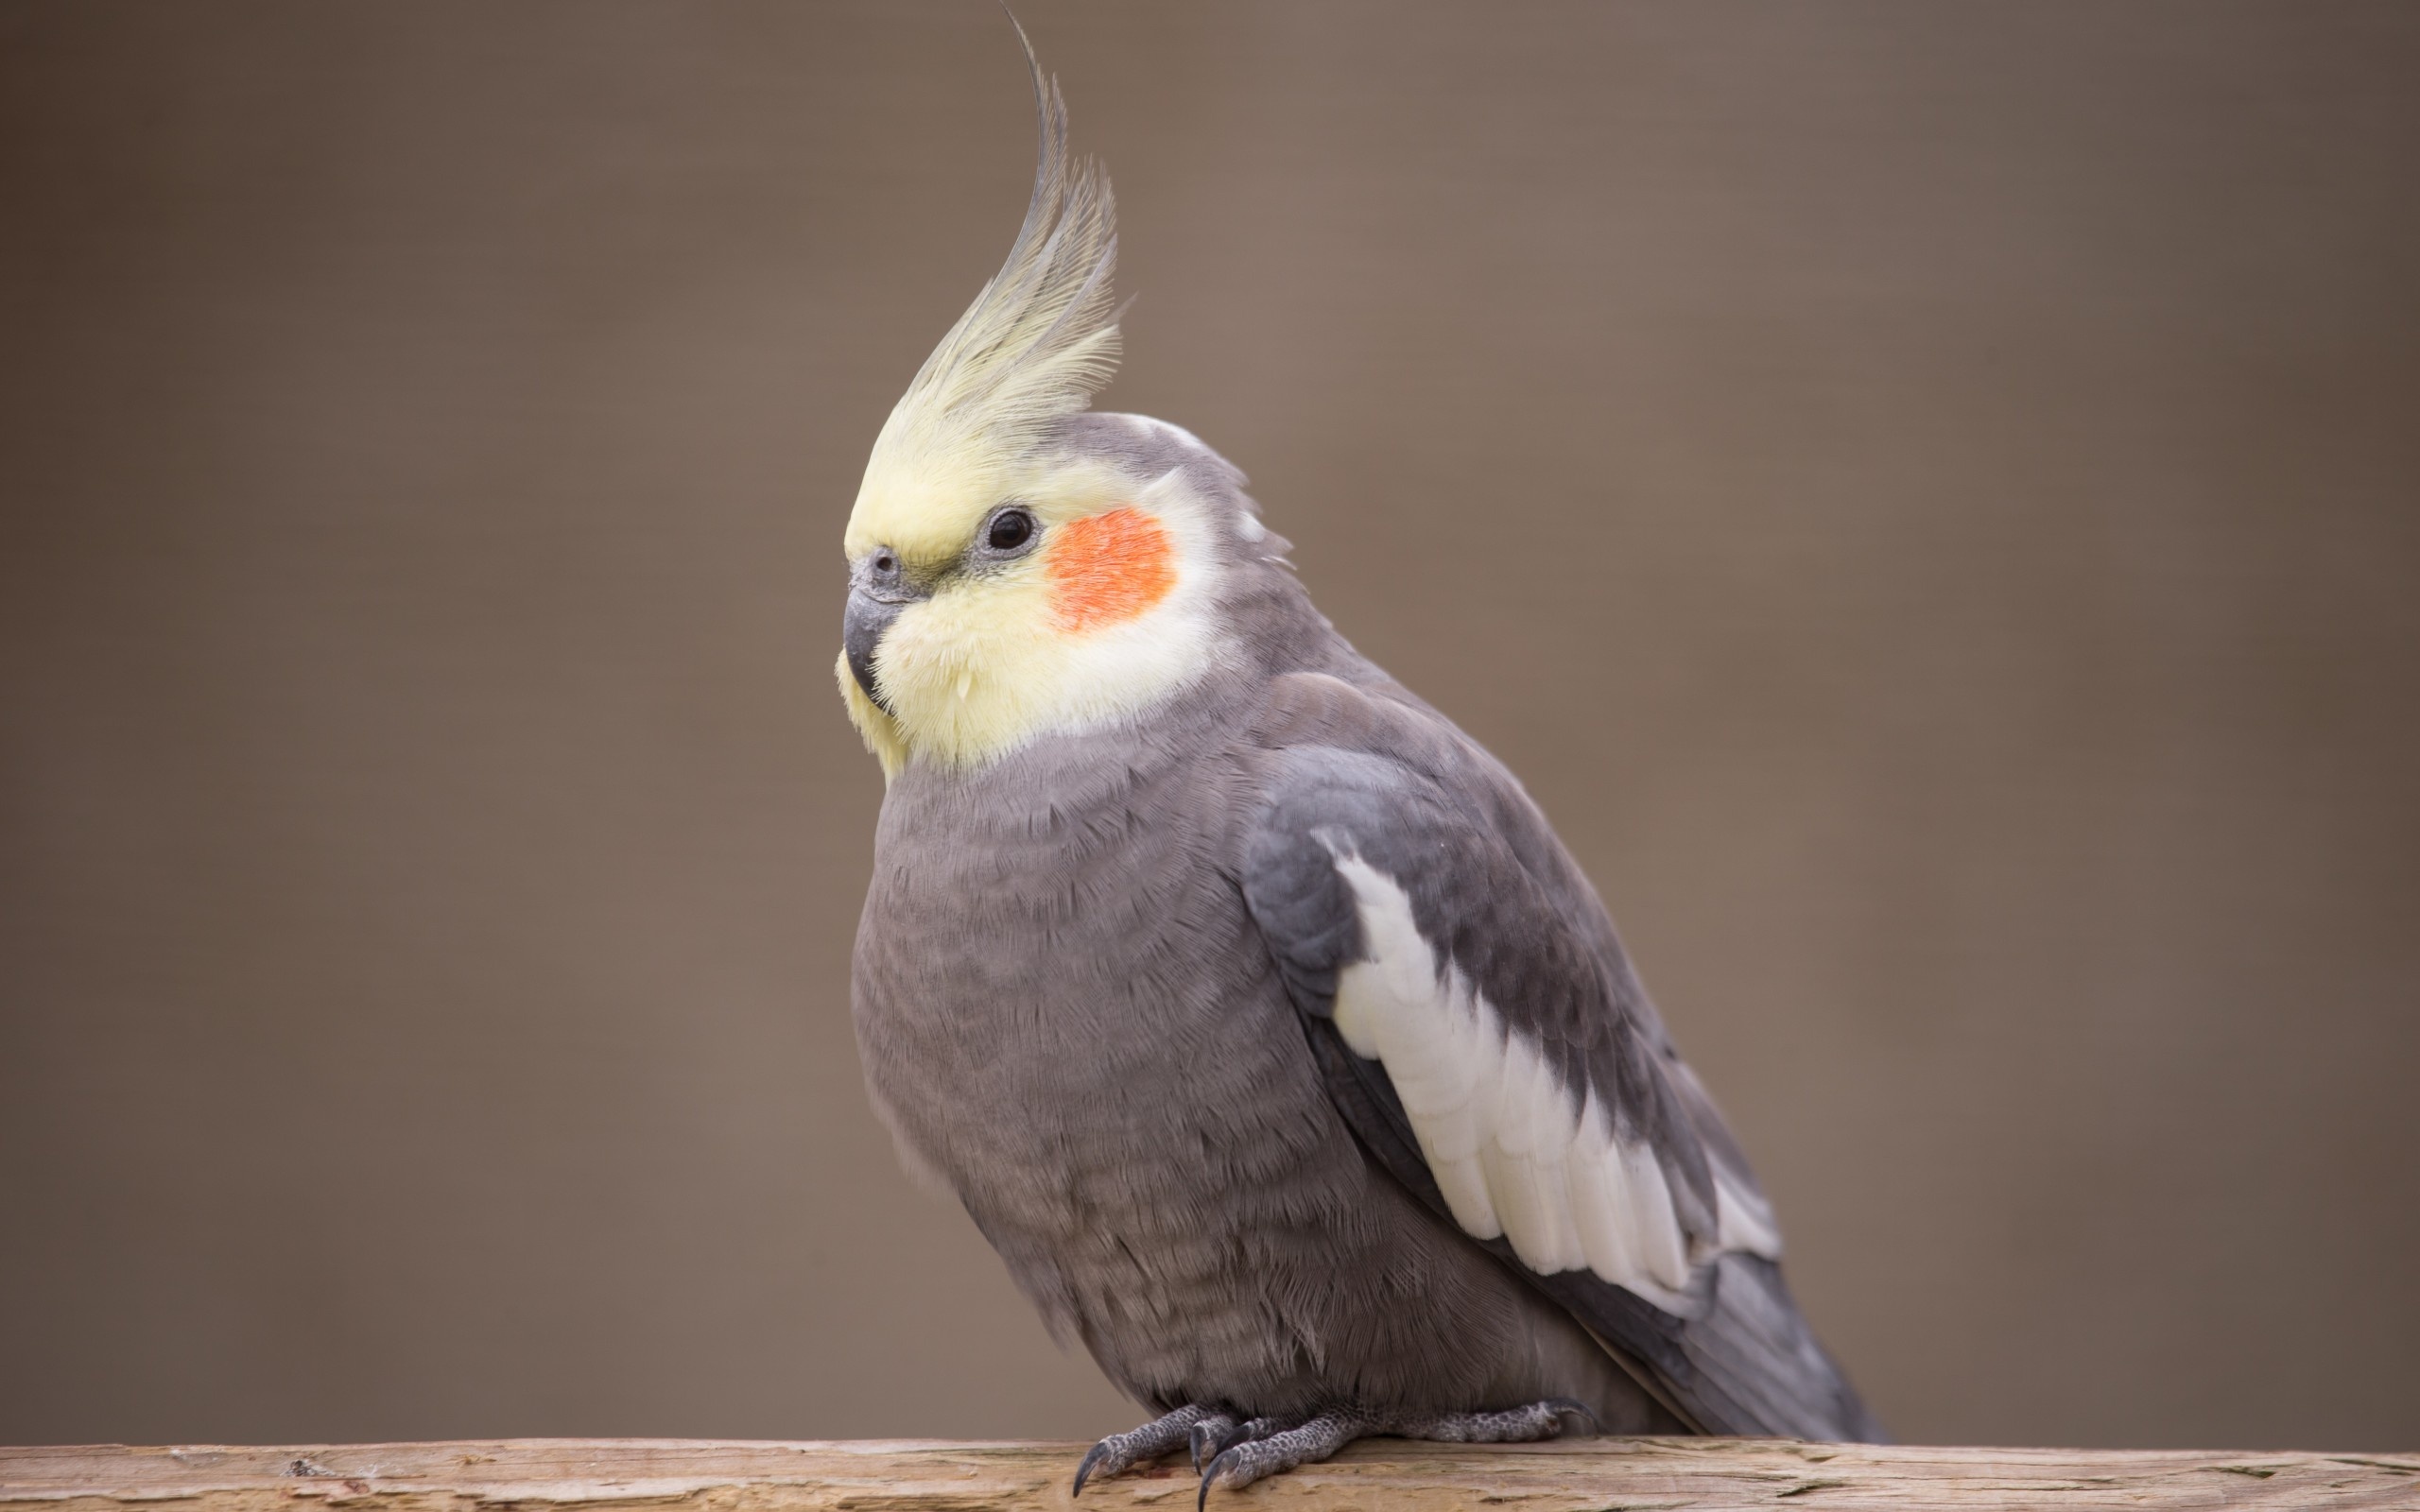 HD cockatiel wallpaper, High-quality bird images, Vibrant plumage, Captivating avian close-ups, 2560x1600 HD Desktop